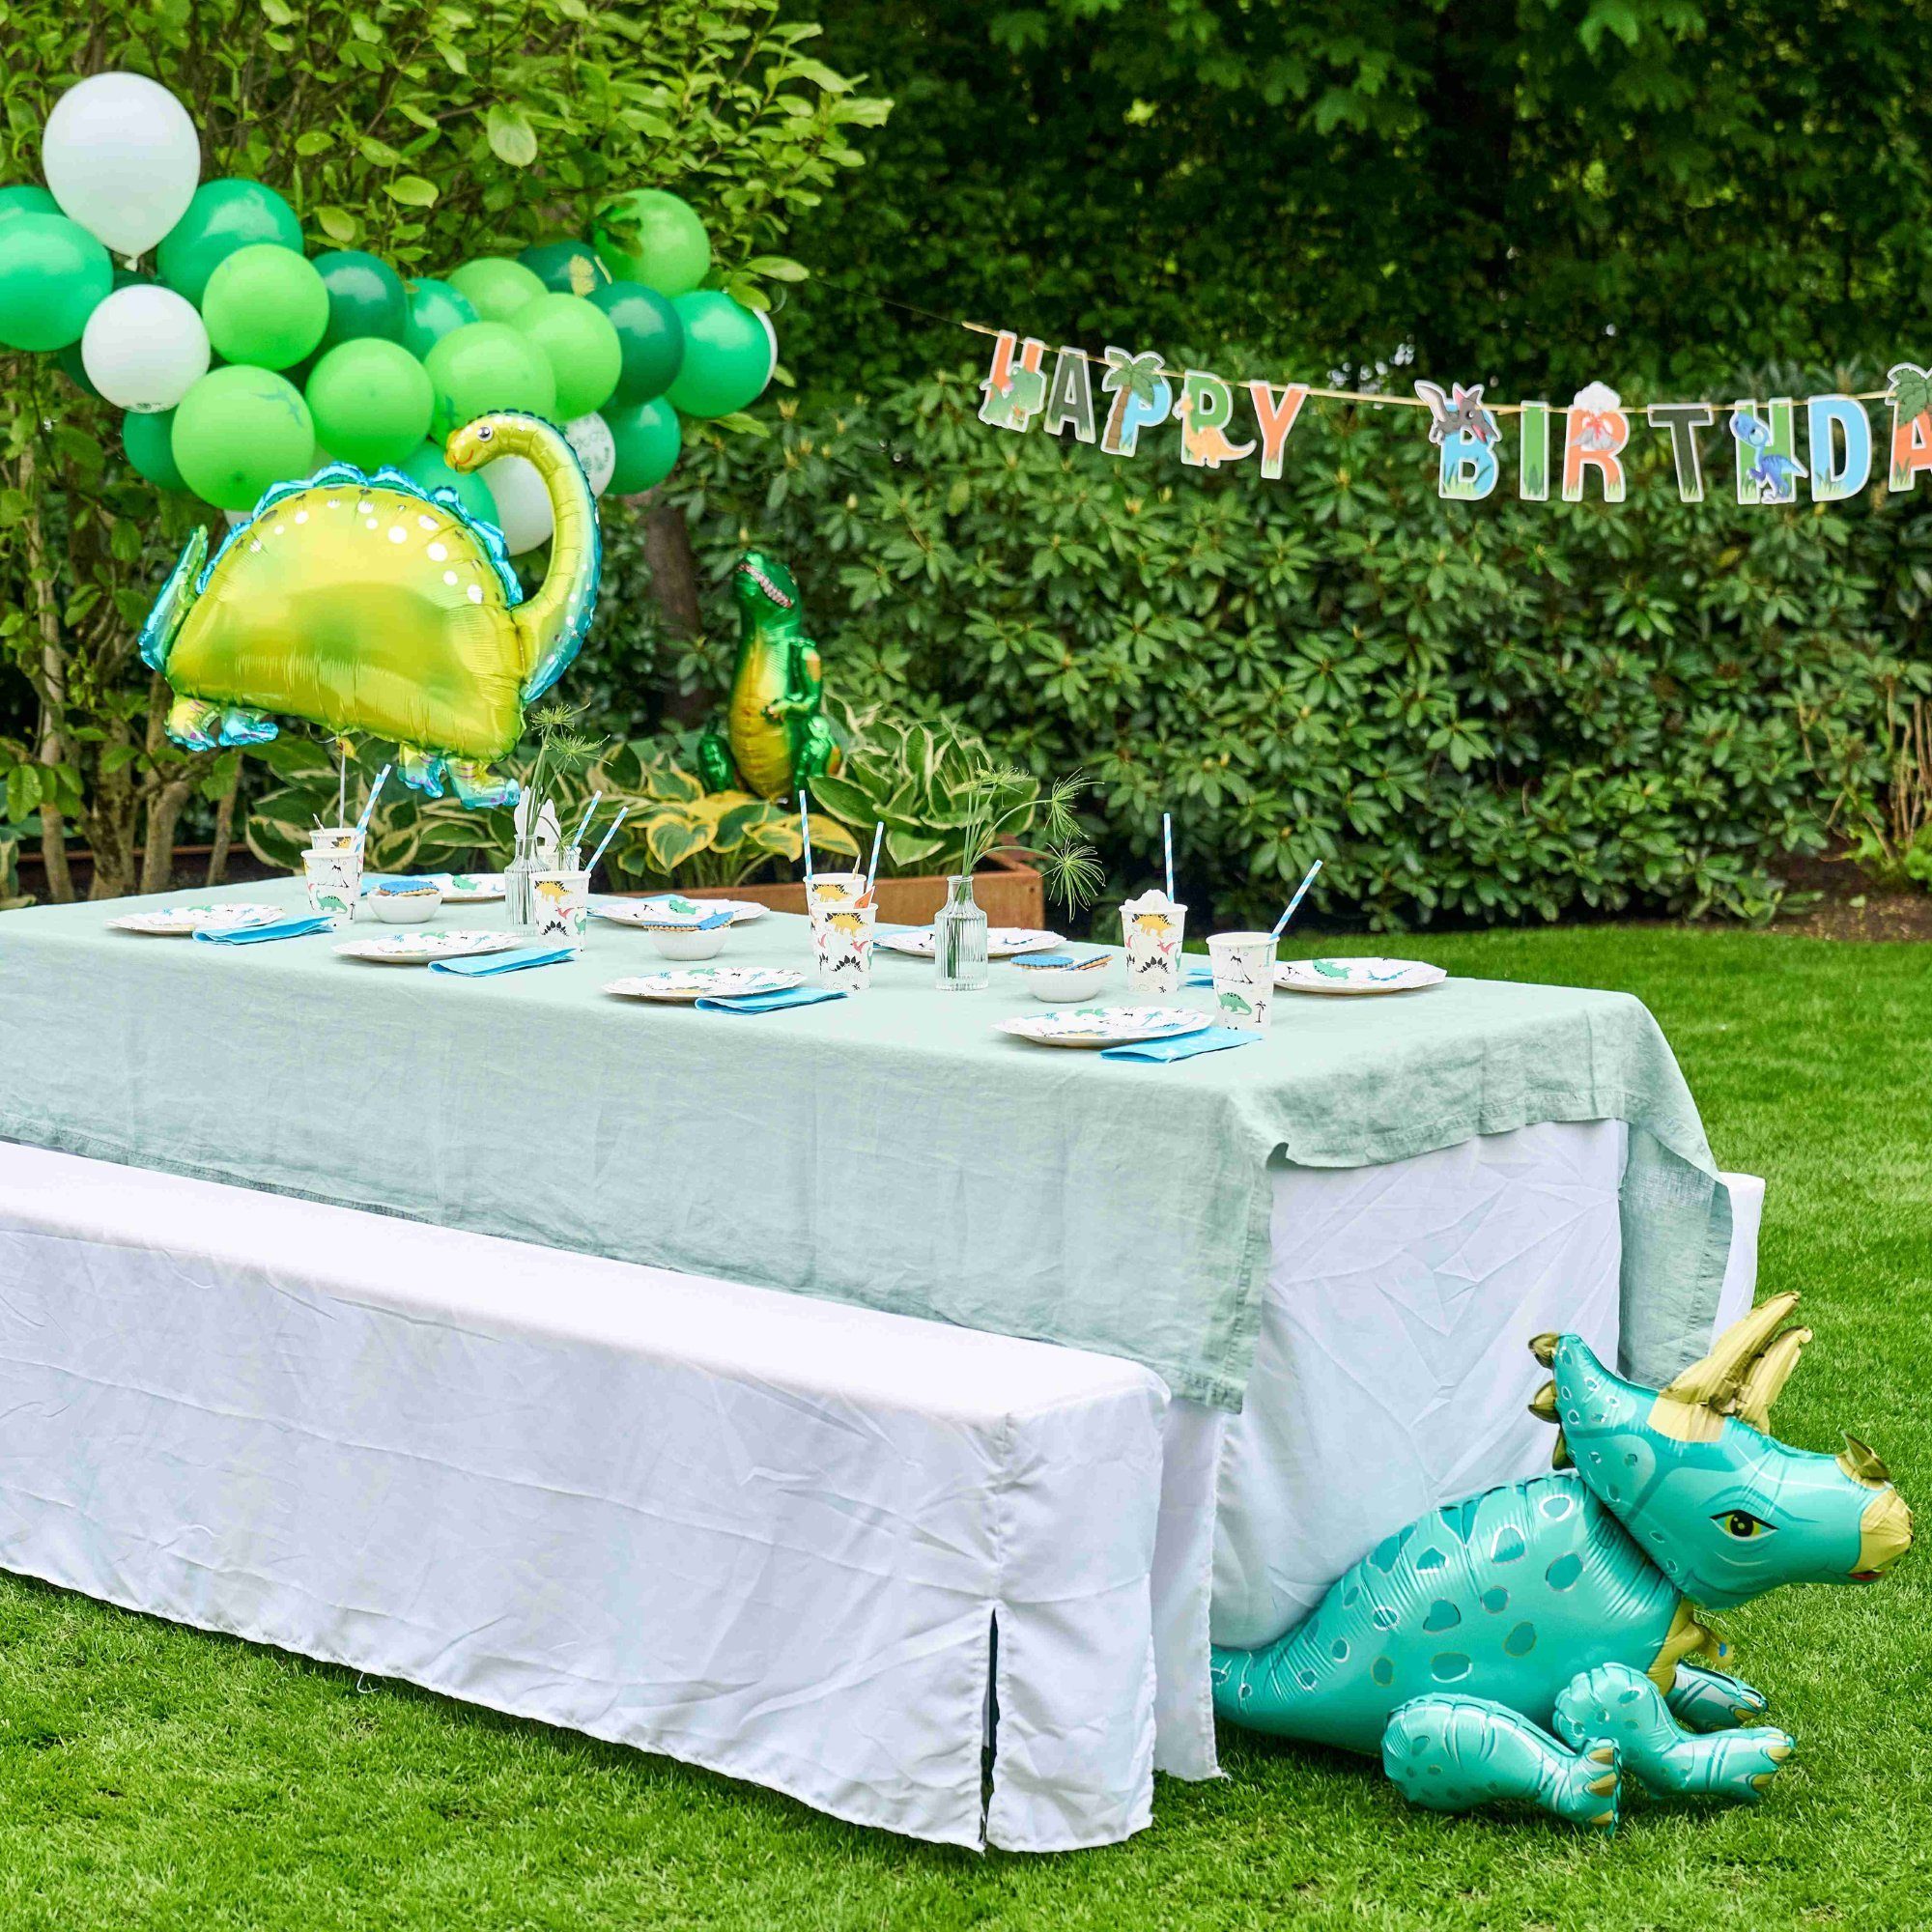 Birthday Kindergeburtstag, Kinder, 8 133 - für Birthday Papierdekoration little Mottobox Dinosaurier für Set Teile aus einem little